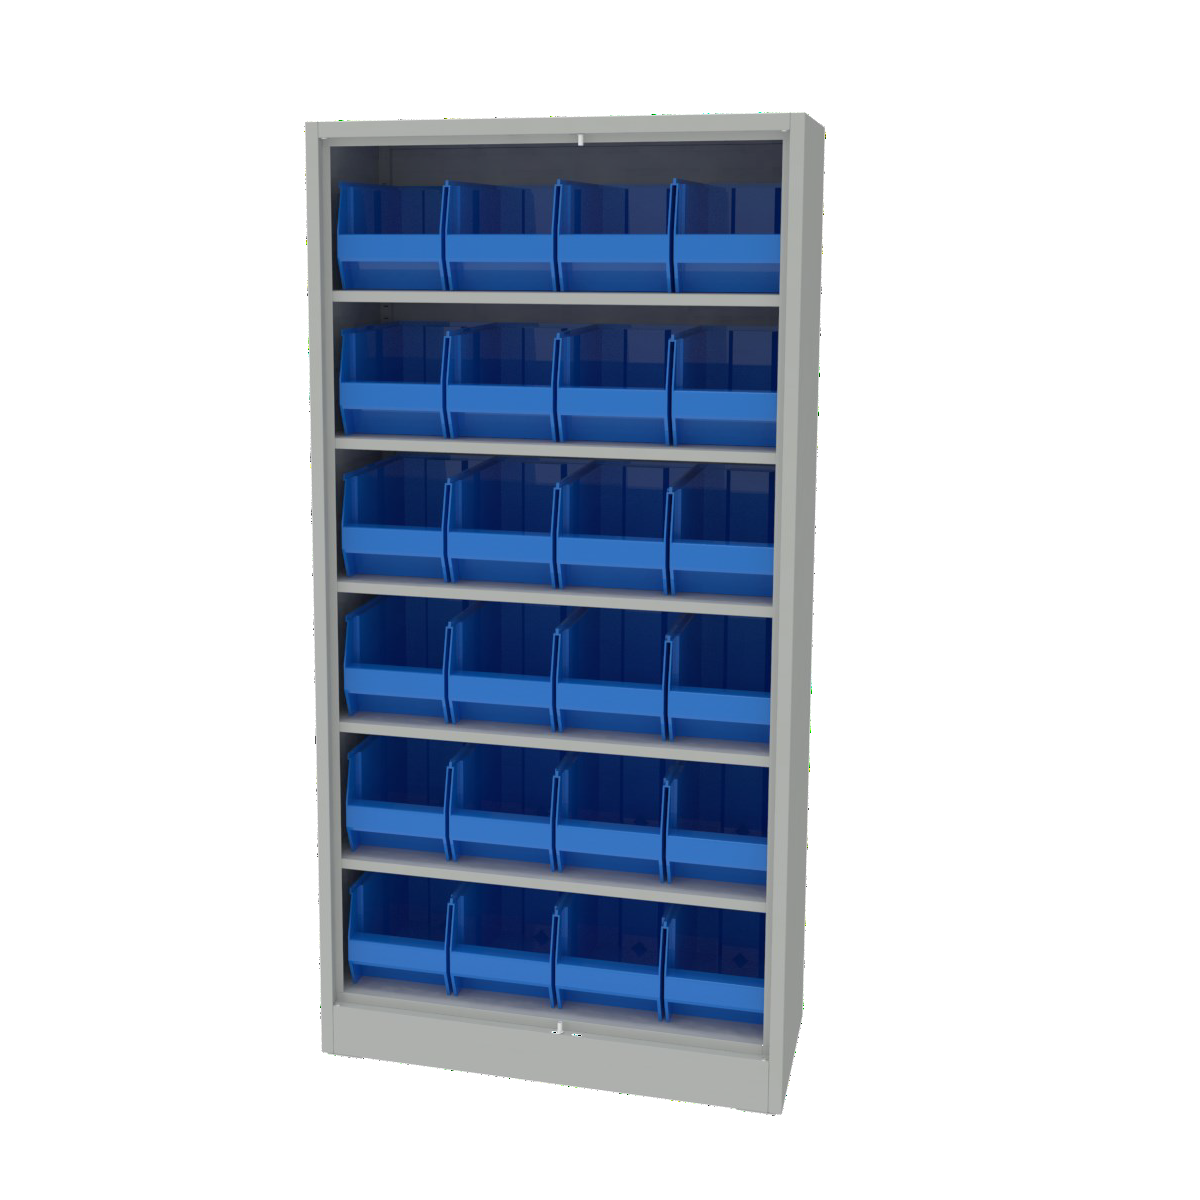 Hyna Storage Cabinets With Bins 900 x 400 x 180